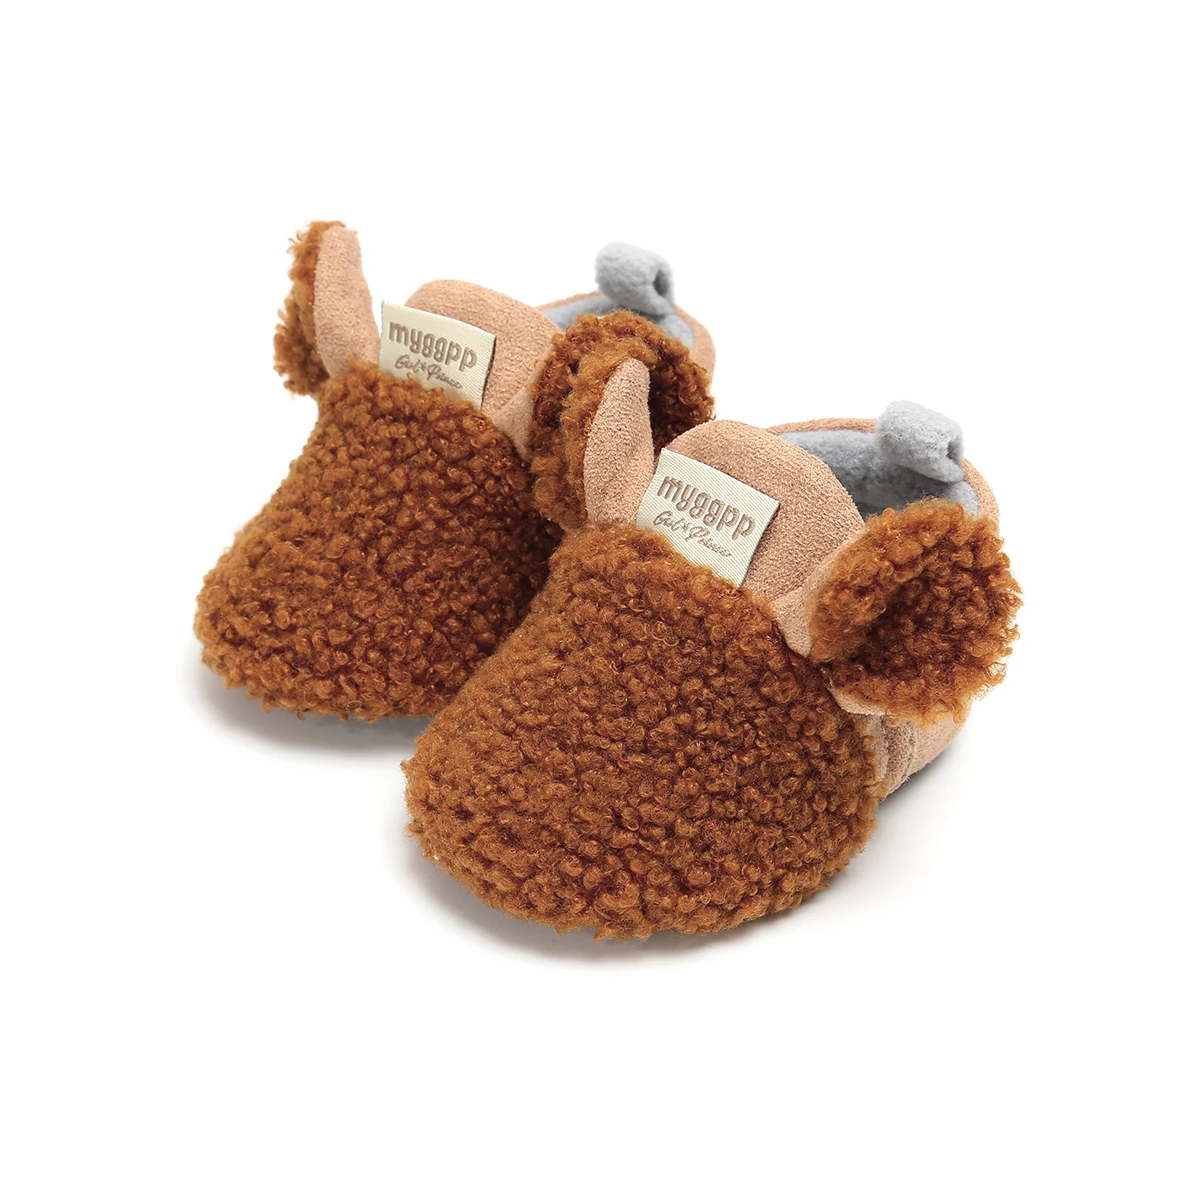 Симпатичные детские ботинки для новорожденных с ушами малышей обувь ползания